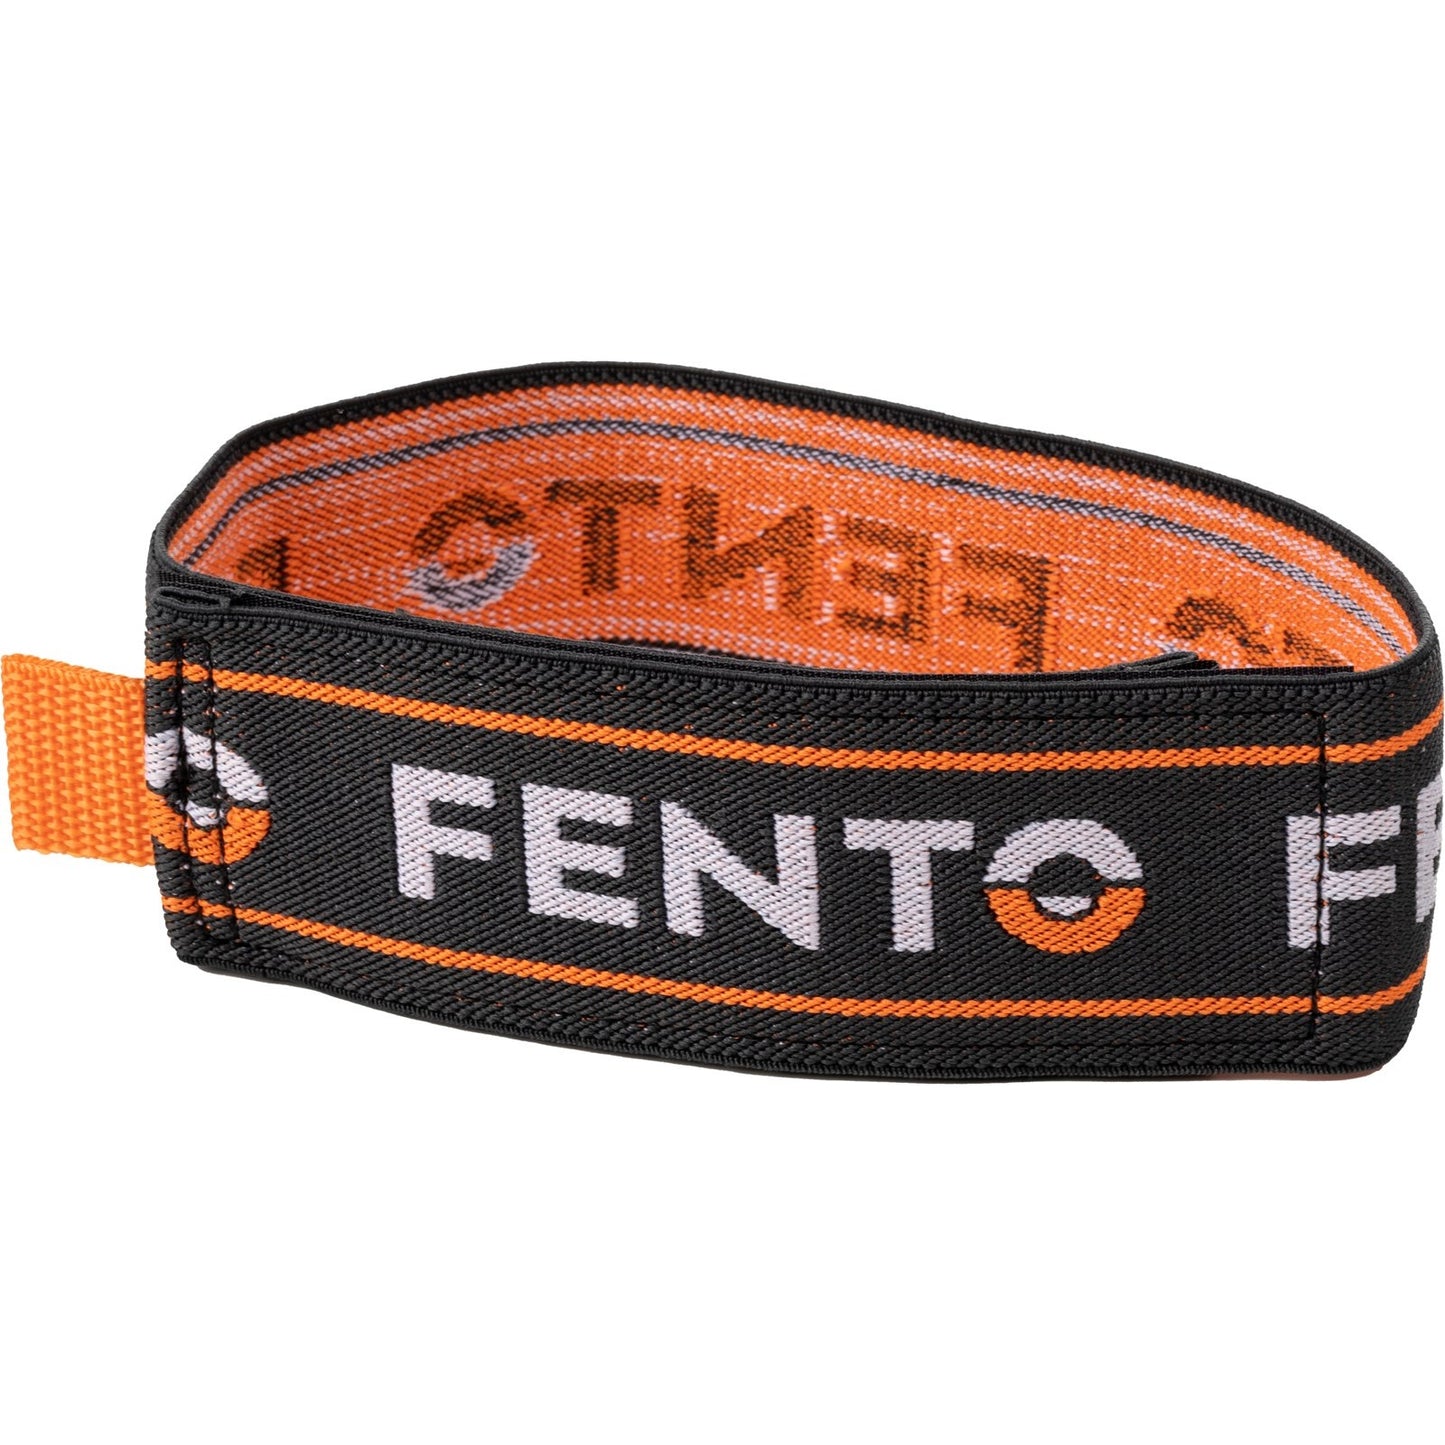 4 Elastics With Velcro Fento Max, Fento